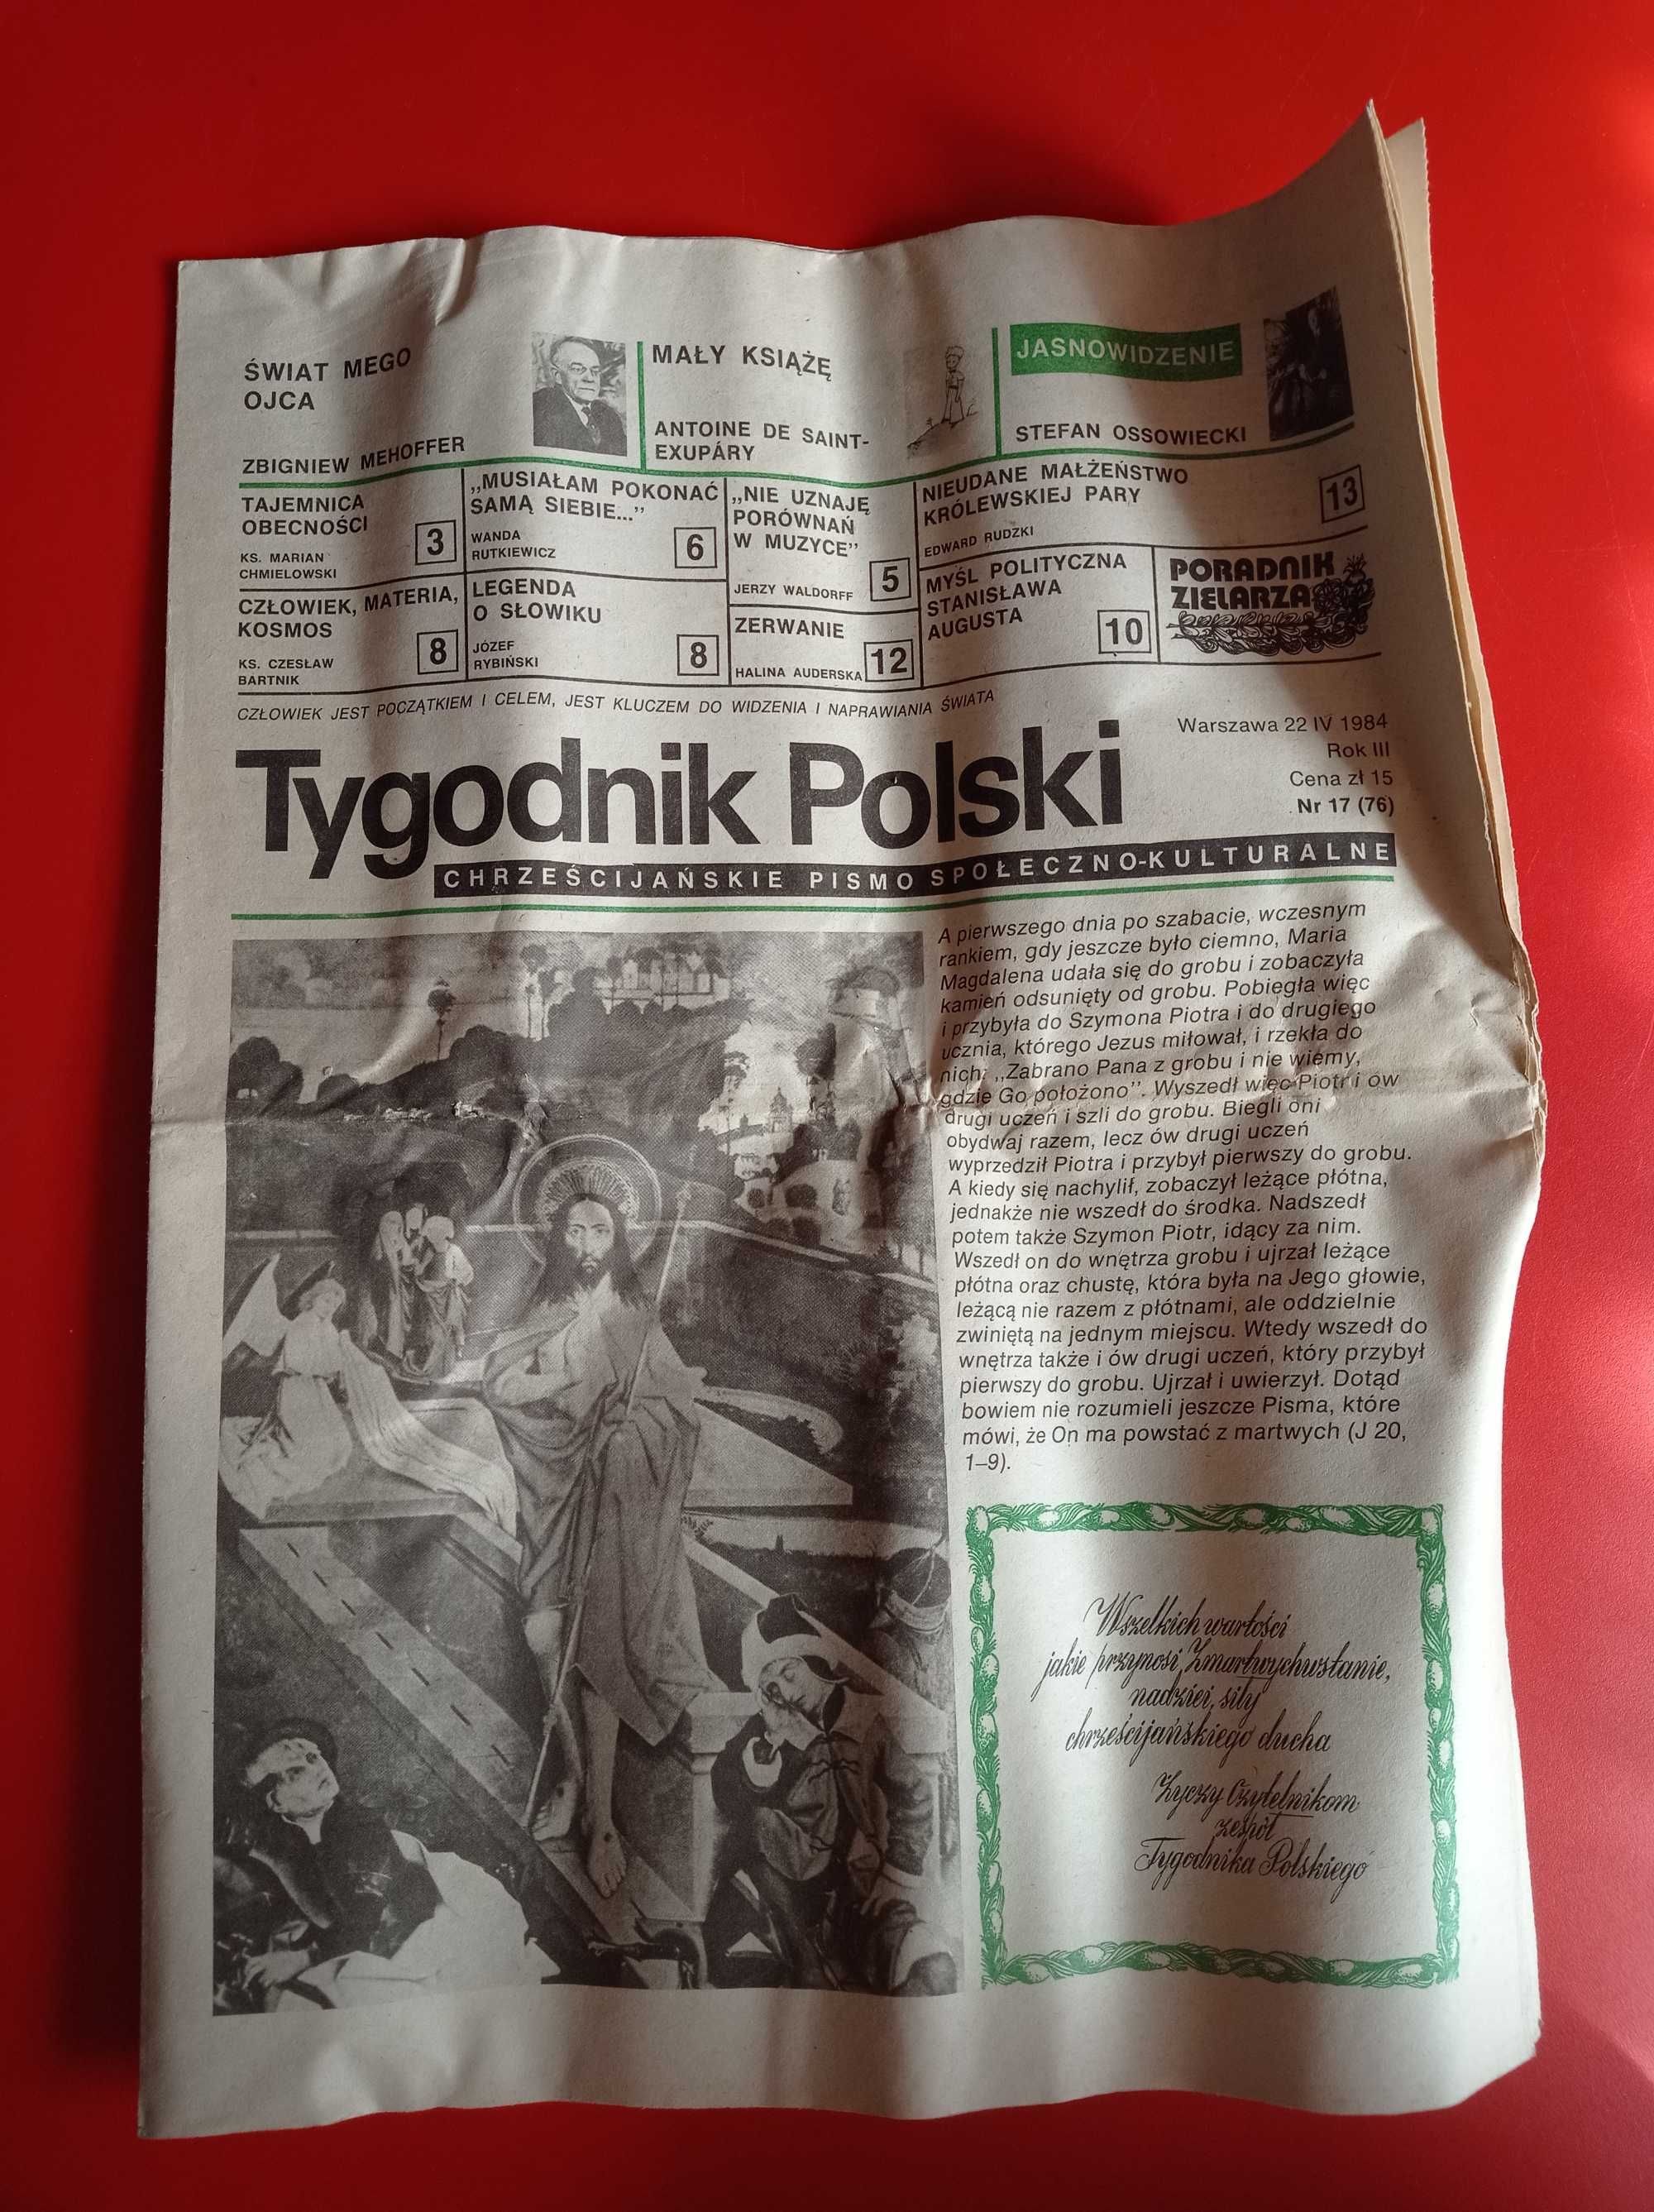 Tygodnik Polski, nr 17/1984, 22 kwietnia 1984